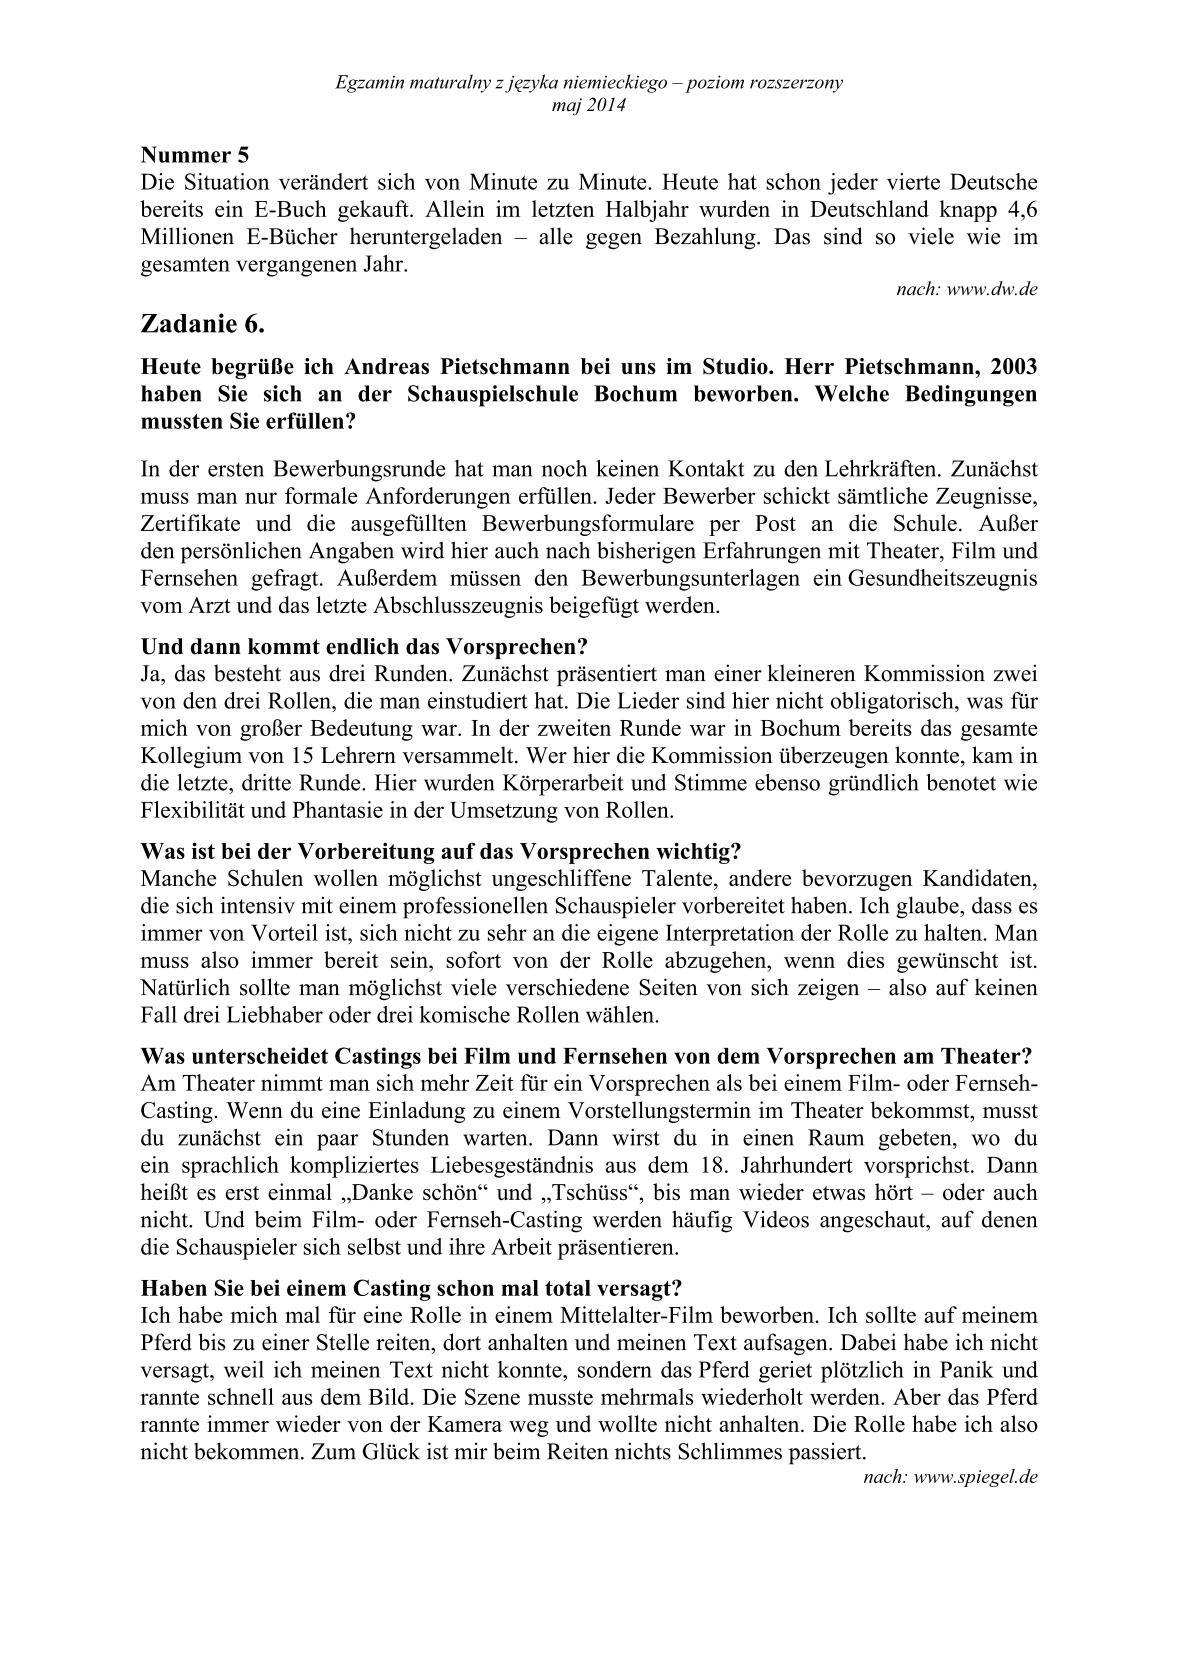 transkrypcja-pytania-jezyk-niemiecki-poziom-rozszerzony-matura-2014-str.2